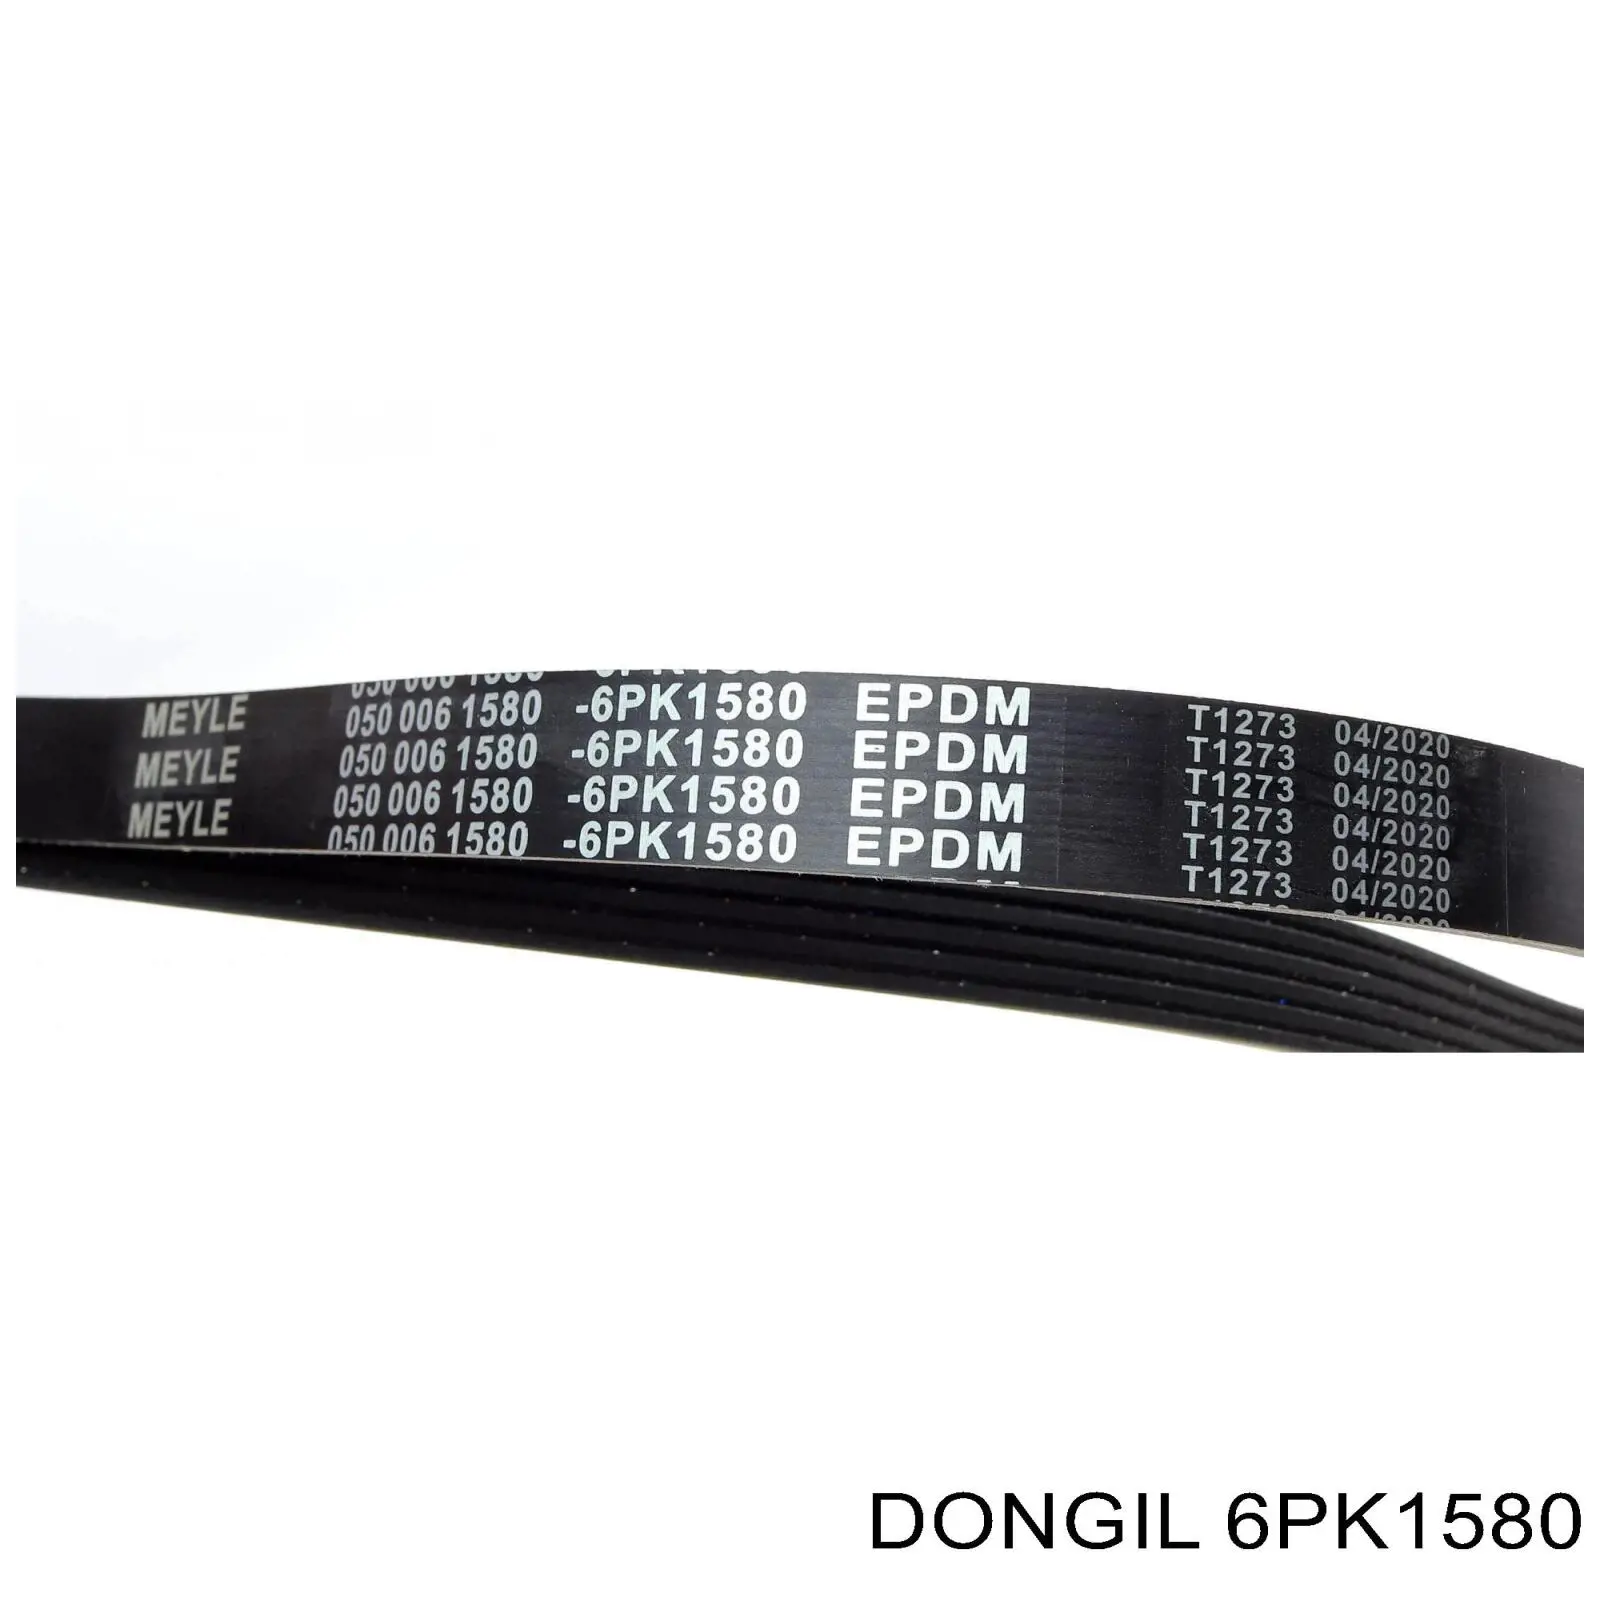 6PK1580 Dongil correa trapezoidal